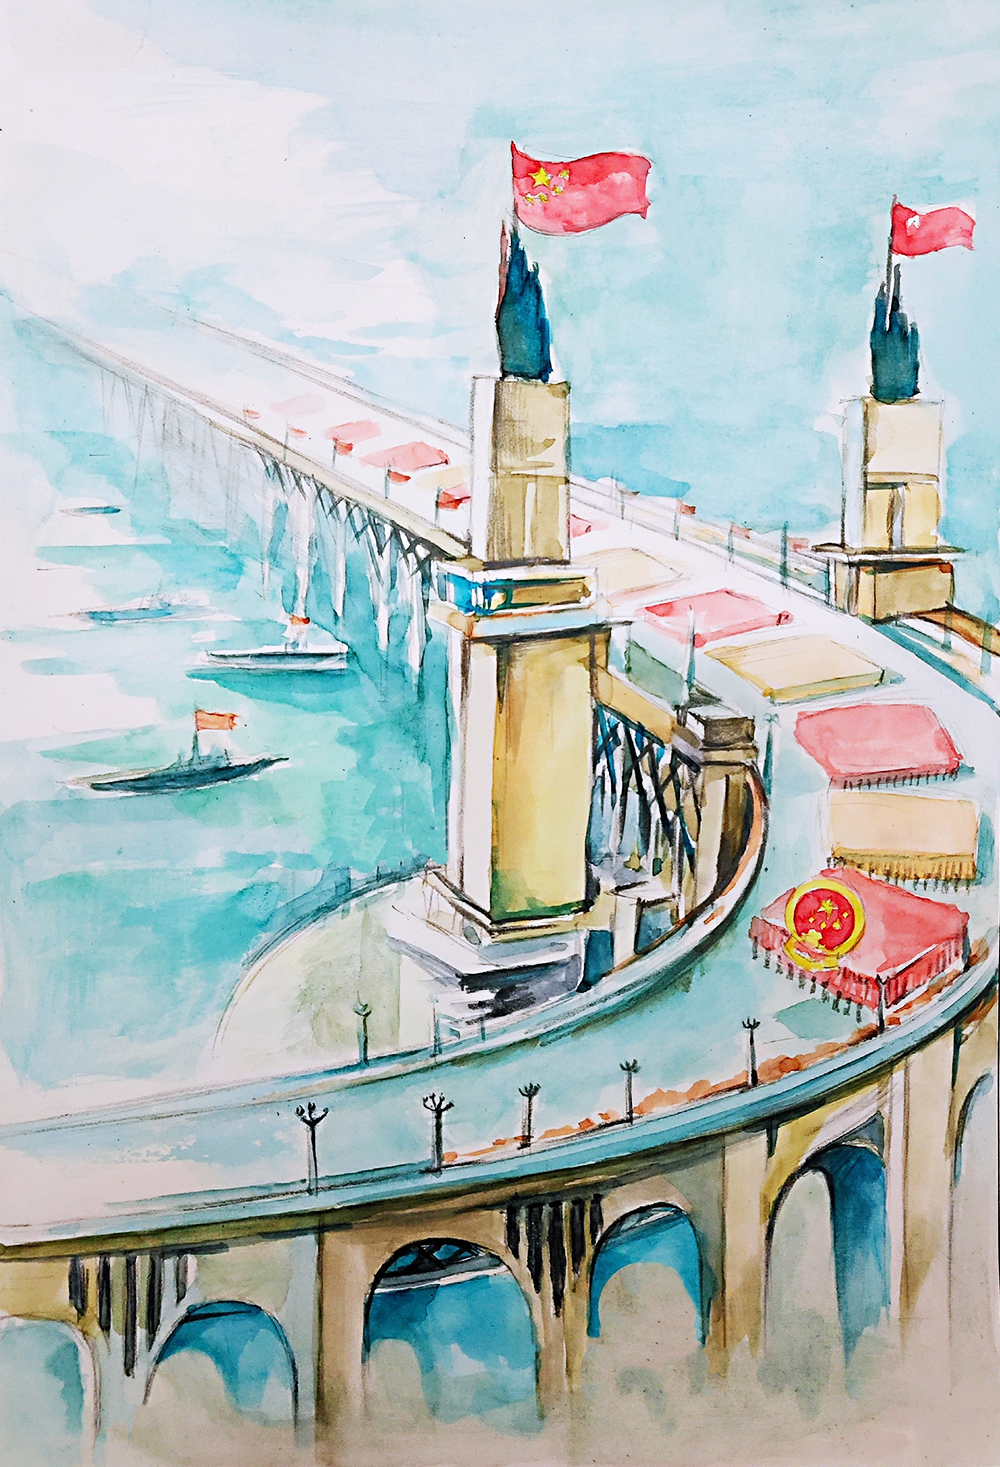 南京长江大桥绘画图片